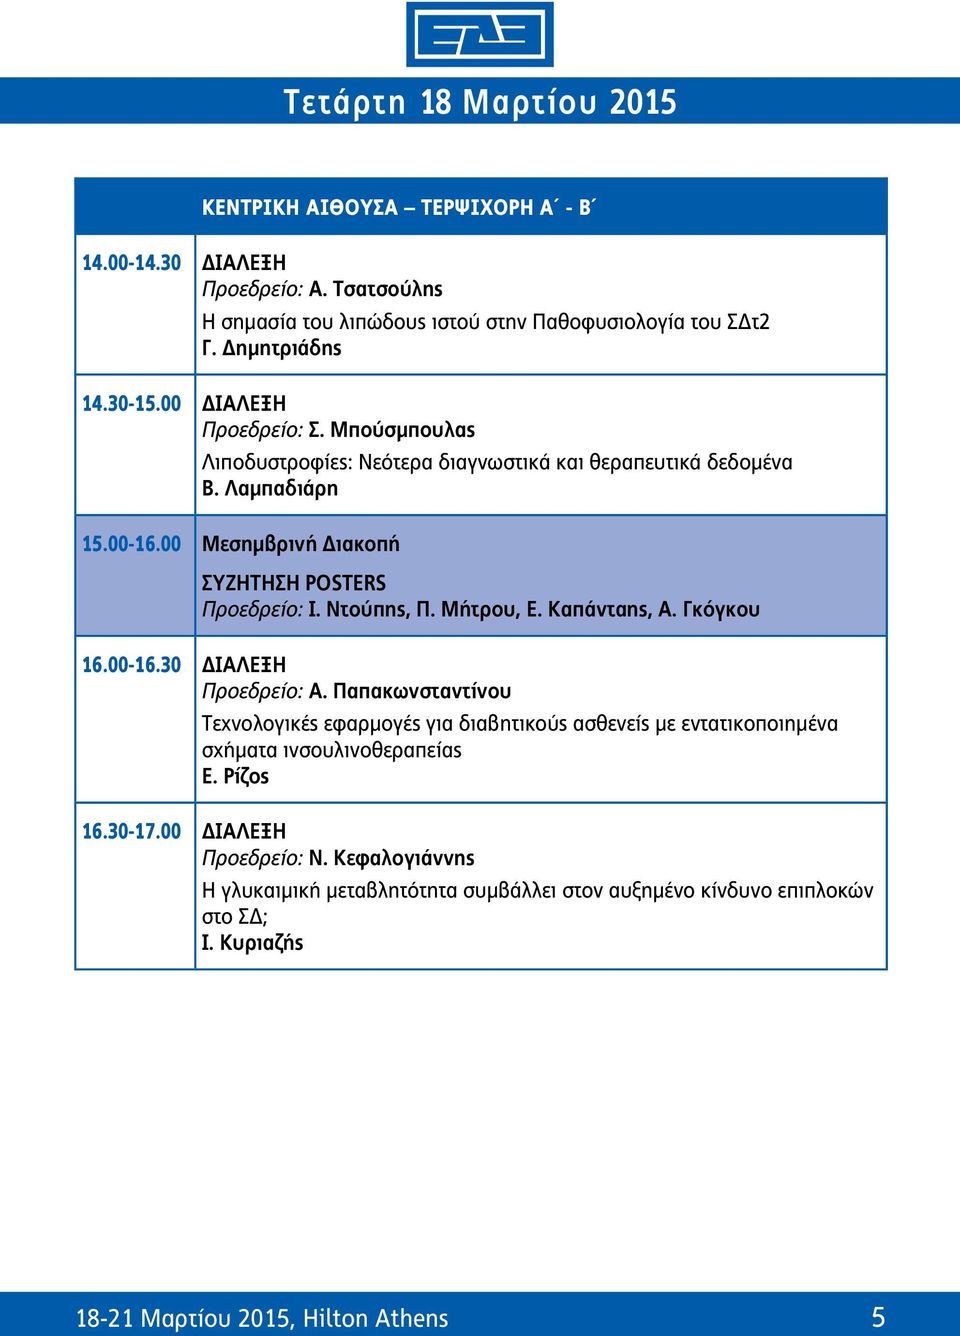 Καπάνταης, Α. Γκόγκου 16.00-16.30 ΔΙΑΛΕΞΗ Προεδρείο: Α. Παπακωνσταντίνου Tεχνολογικές εφαρμογές για διαβητικούς ασθενείς με εντατικοποιημένα σχήματα ινσουλινοθεραπείας Ε.